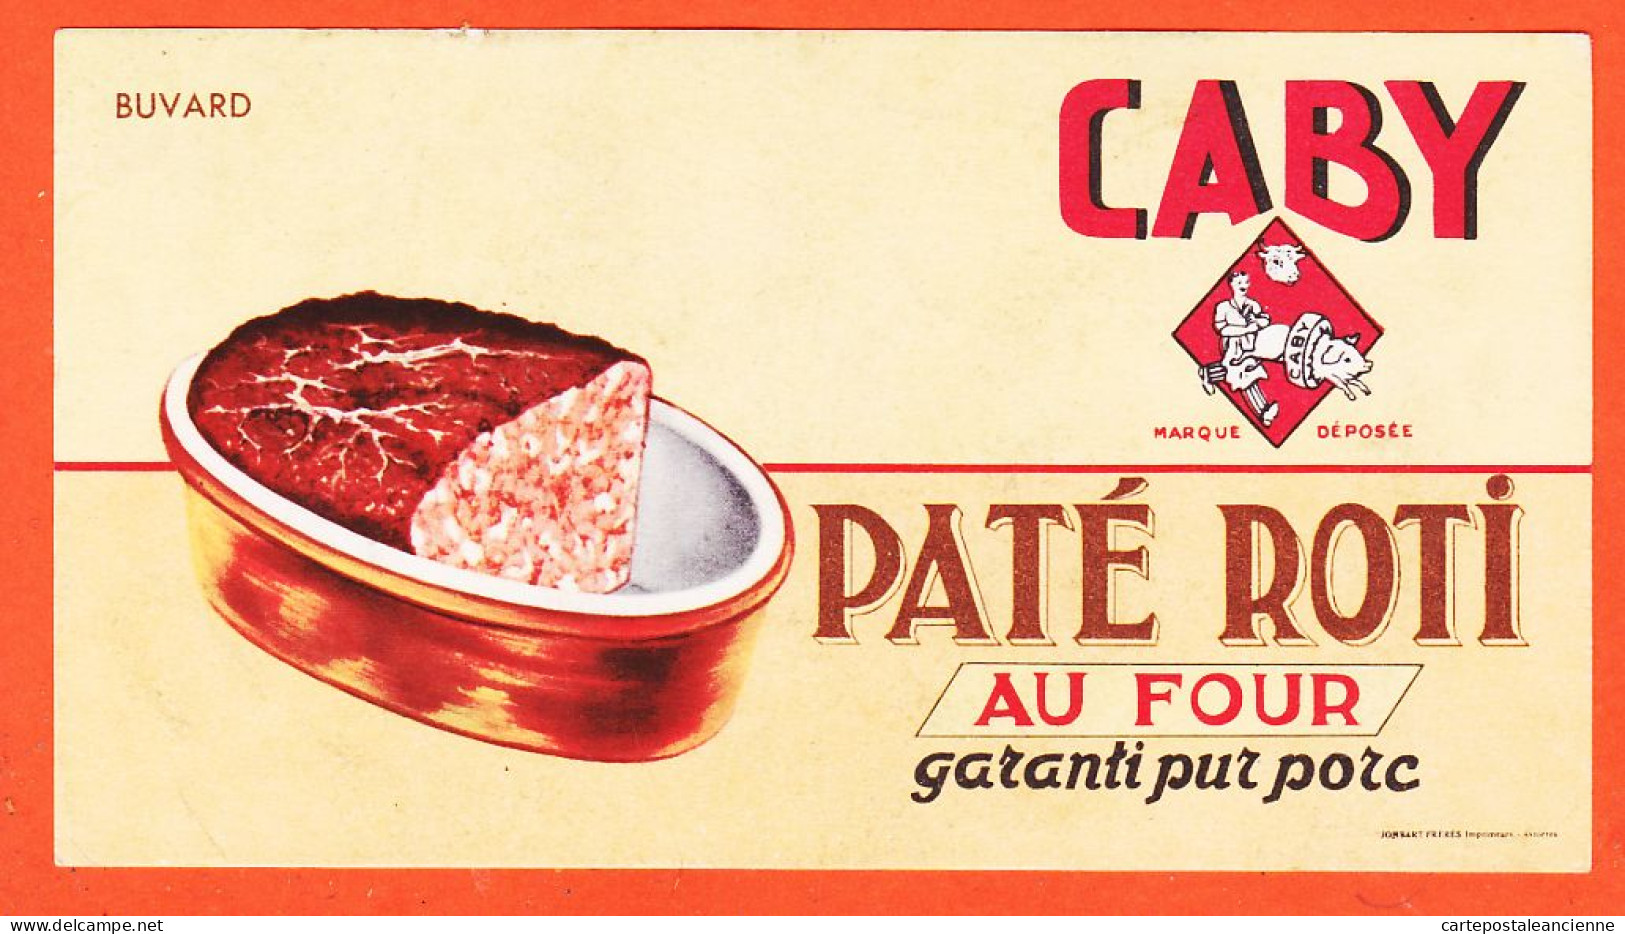 06167 / CABY Paté Roti Four Garanti Pur Porc Imprimeurs JOMBART Frères Asnières Buvard-Blotter - Alimentaire